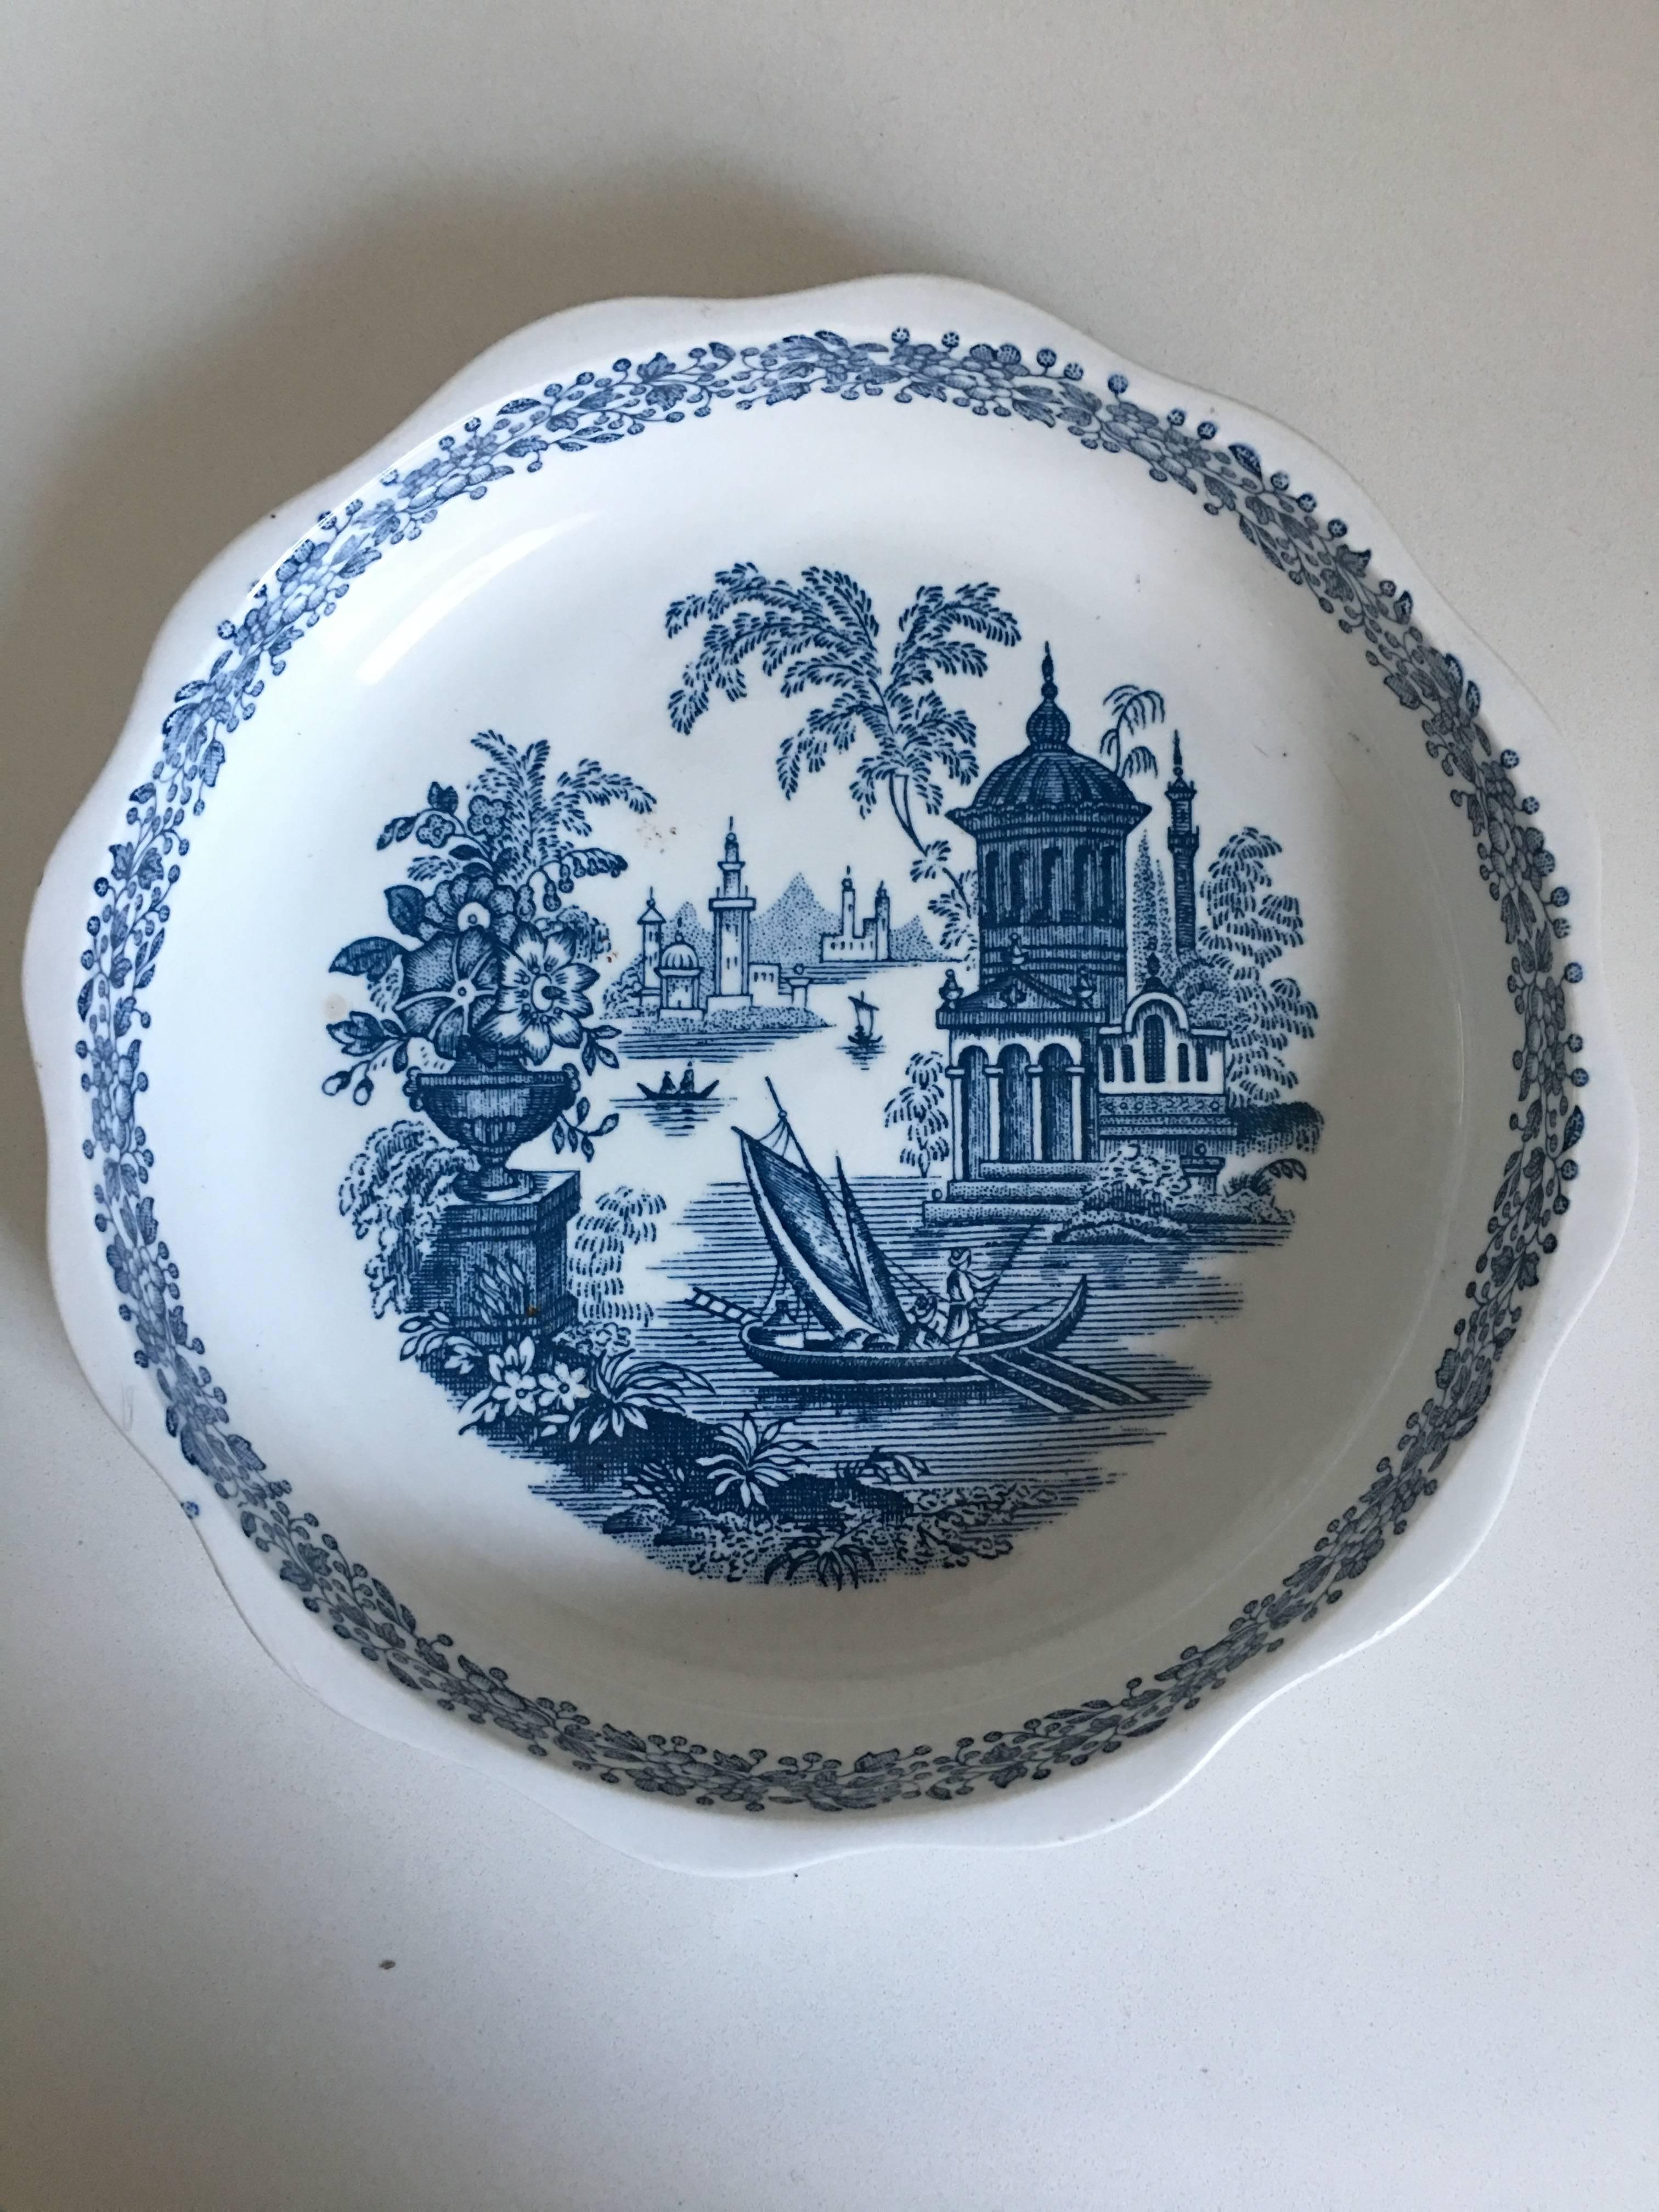 20th century Spanish bowl in white and blue by La Cartuja de Sevilla.